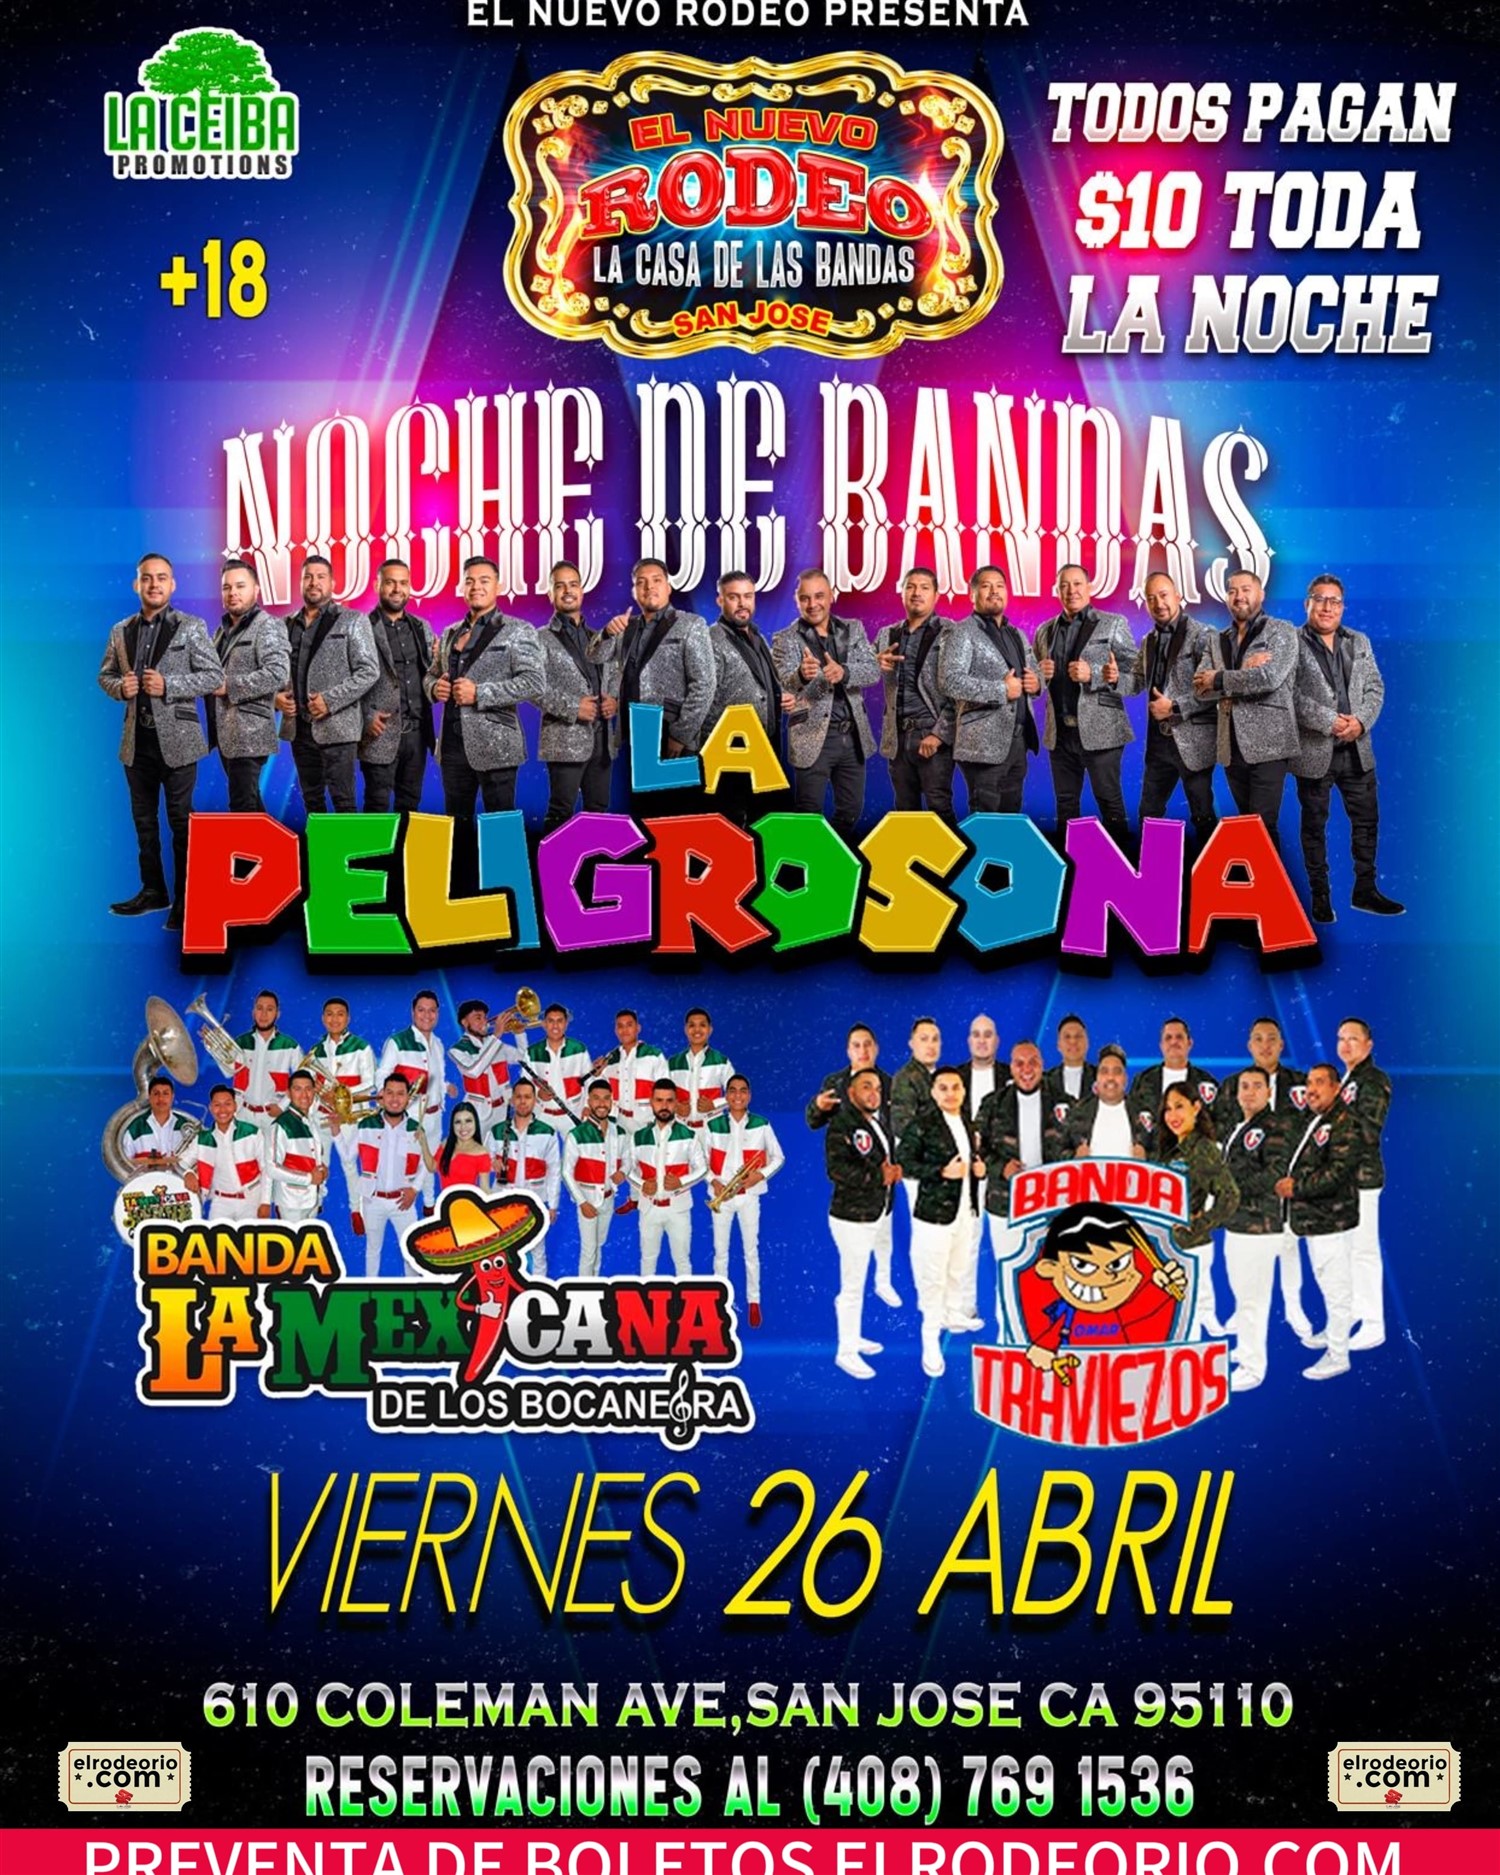 Noche de Bandas! Banda La Peligrosona,Banda La Mexicana y Banda Traviezos on Apr 26, 20:00@Club Rodeo - Buy tickets and Get information on elrodeorio.com sanjoseentertainment